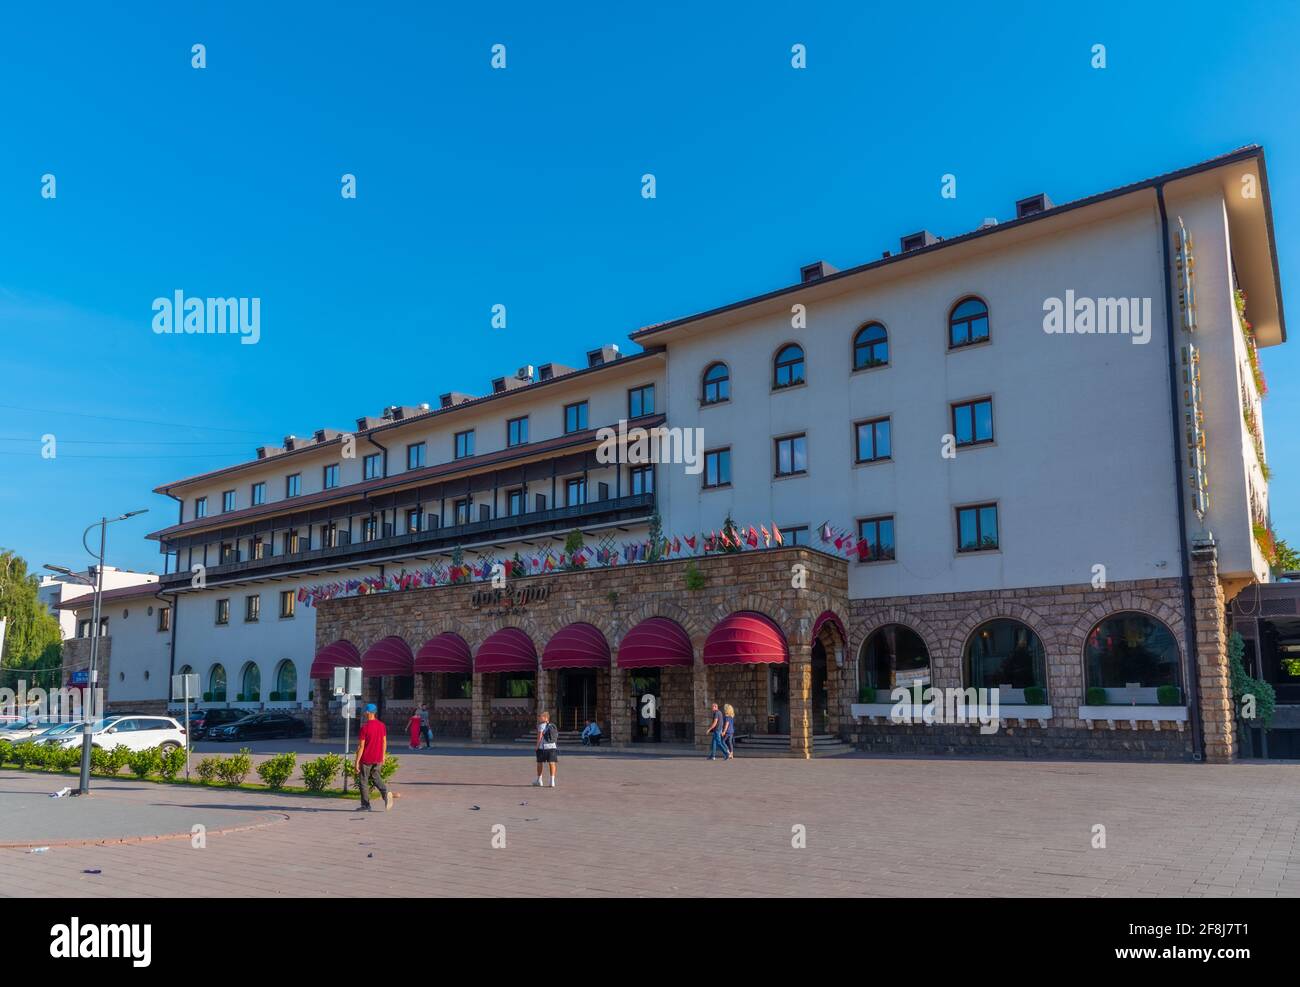 PEJA, KOSOVO, 17 SEPTEMBRE 2019 : Hôtel Dukagjini à la place principale de Peja, Kosovo Banque D'Images